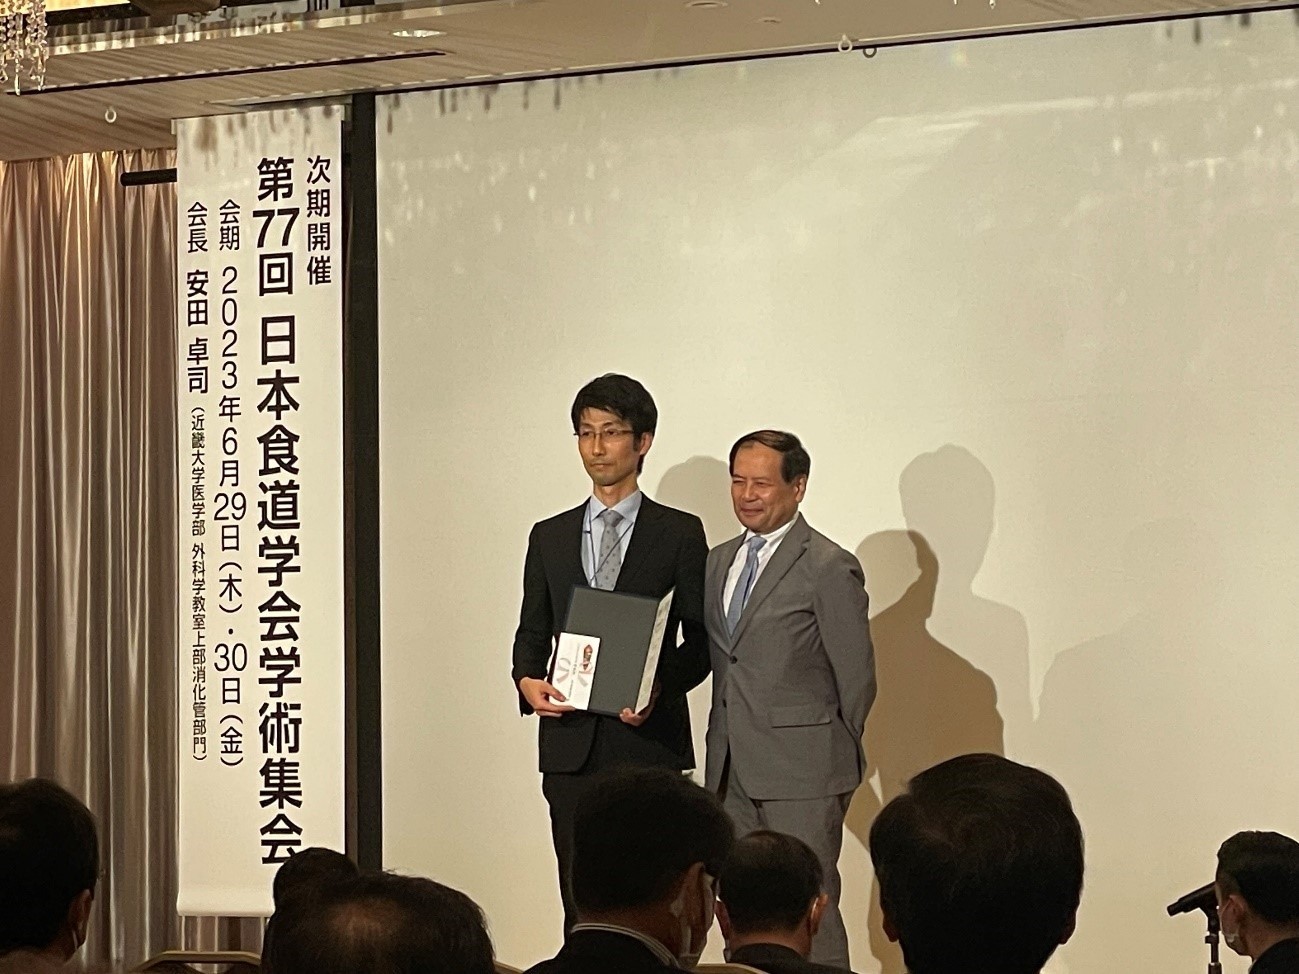 松田諭先生が日本食道学会機関誌Esophagus誌のBest reviewer 功労賞に選出されました。